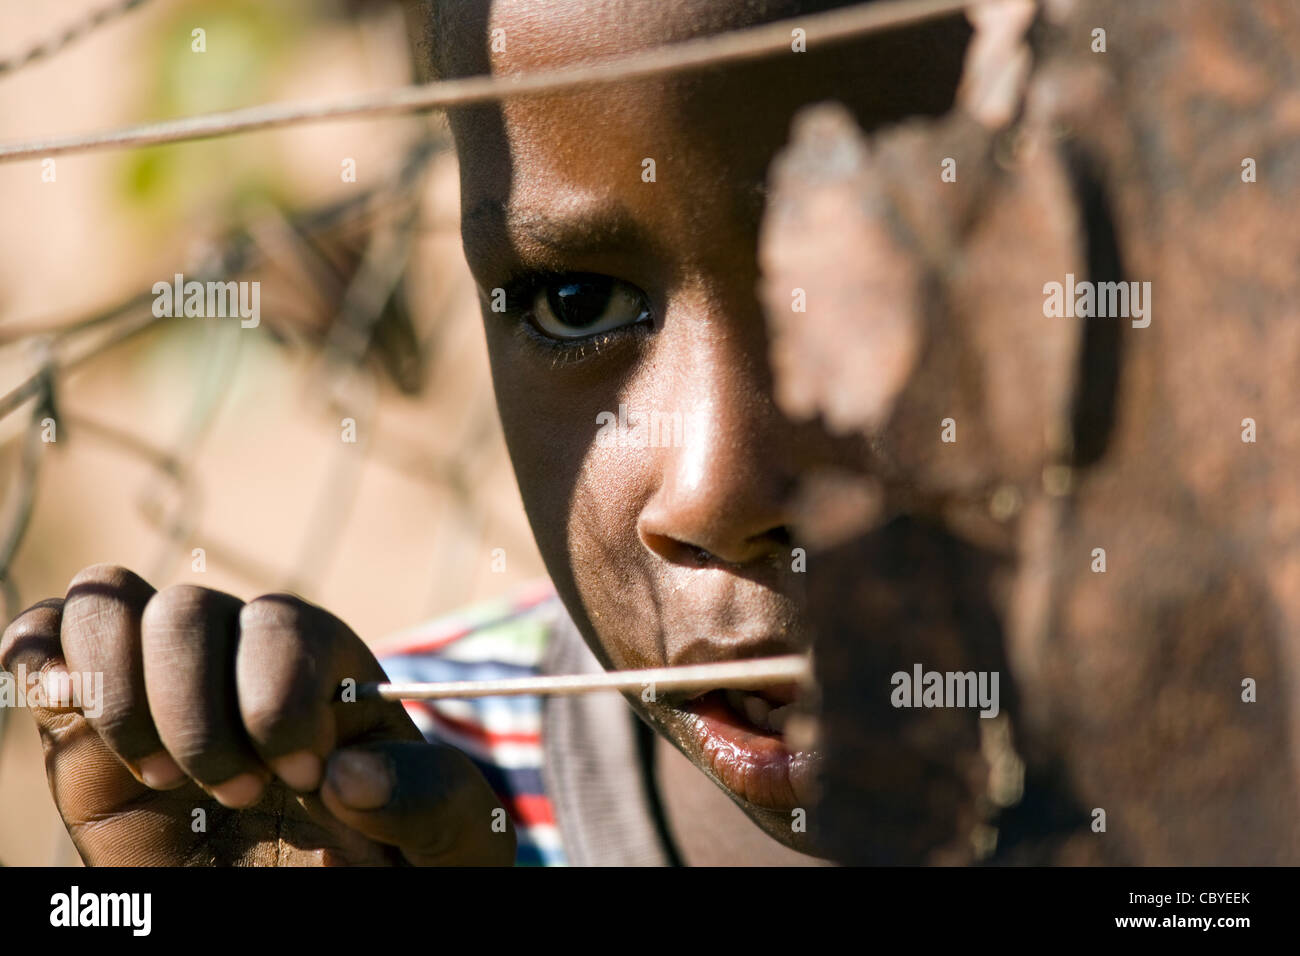 Afrikanischen jungen suchen durch Draht Zaun - Twyfelfontein - Damaraland, Namibia, Afrika Stockfoto